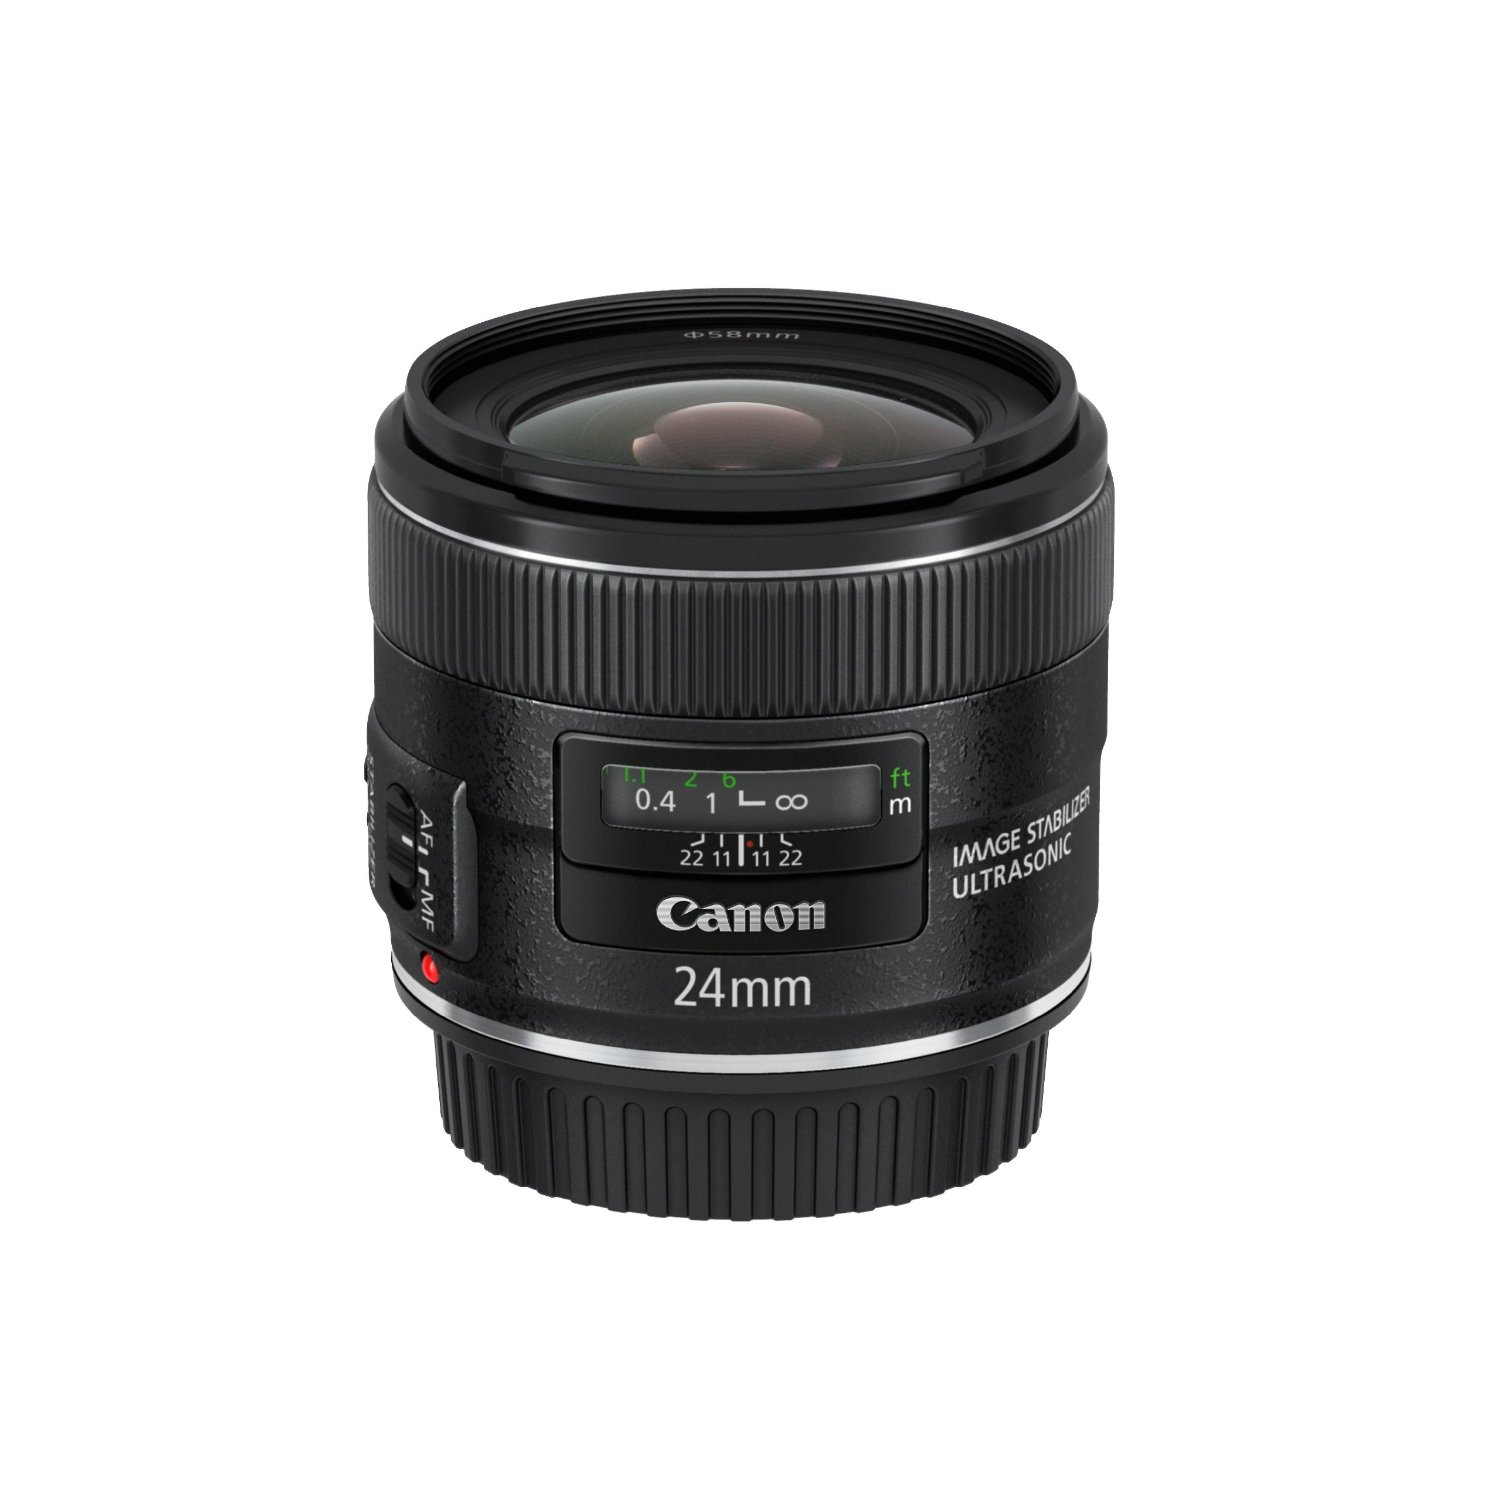 佳能 Canon EF 24mm f/2.8 IS USM 单反相机广角镜头  $657.00